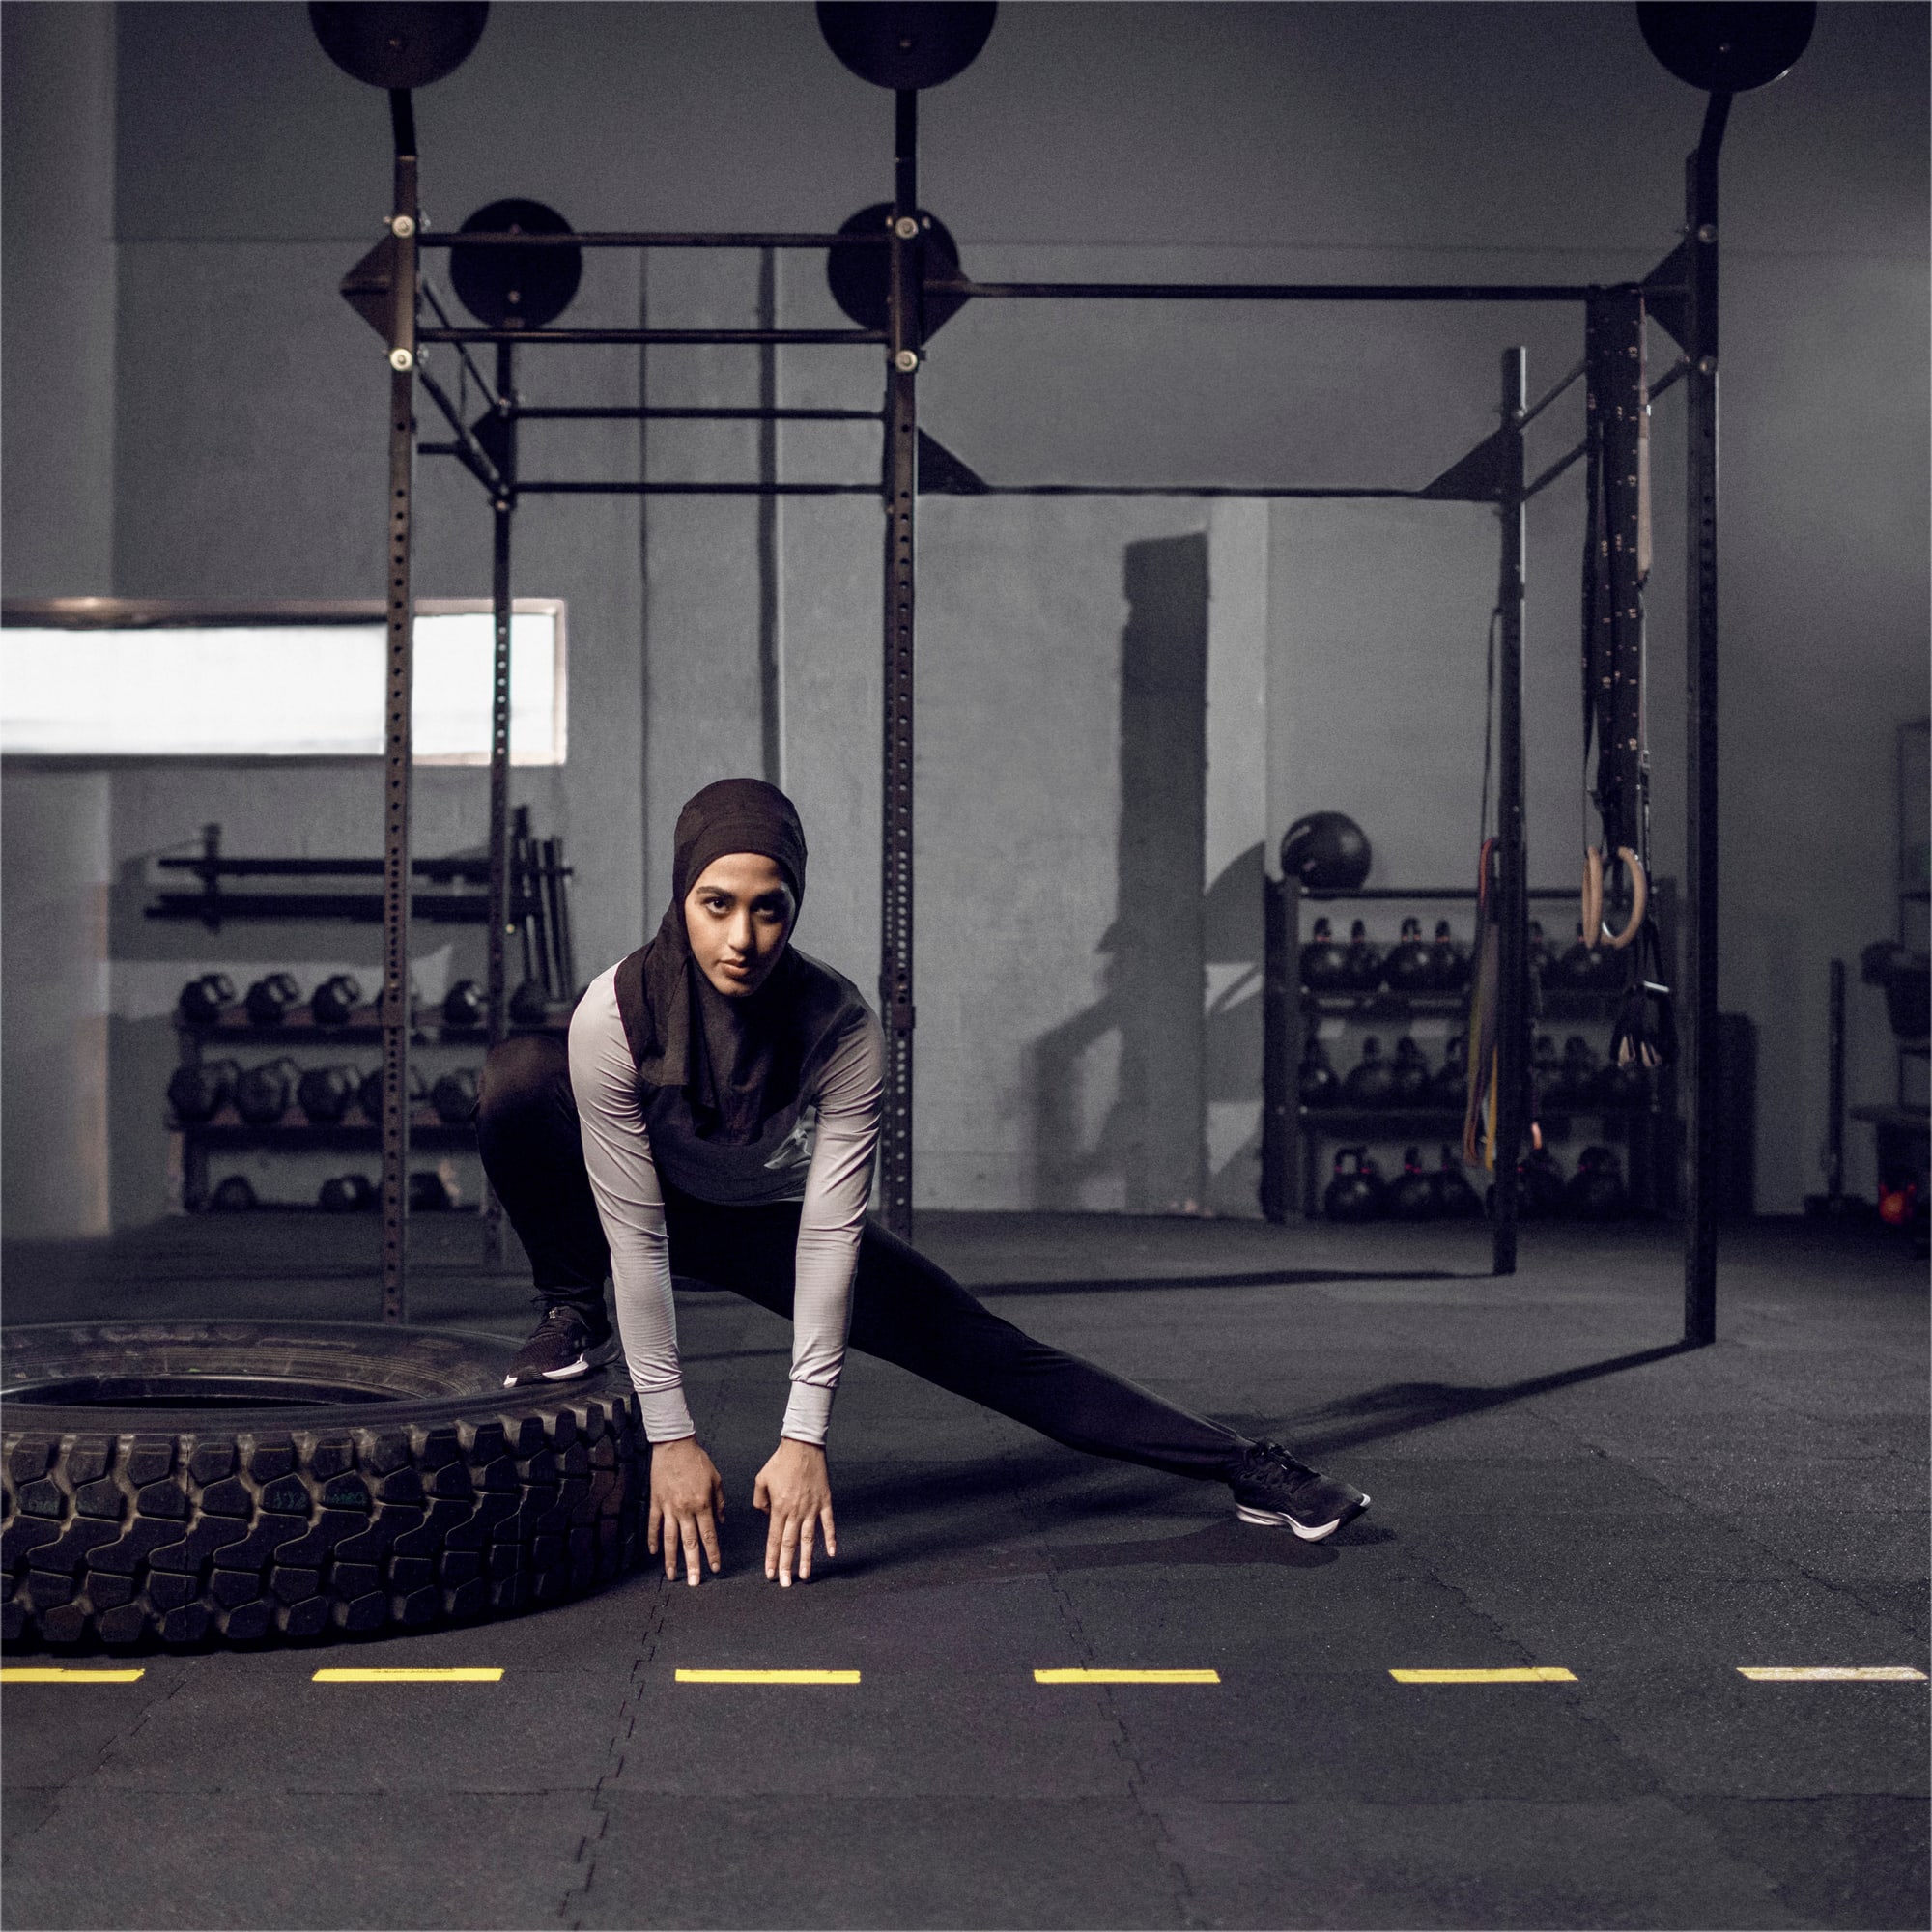 PUMA Sport Running Hijab Für Damen, Schwarz, Größe: M